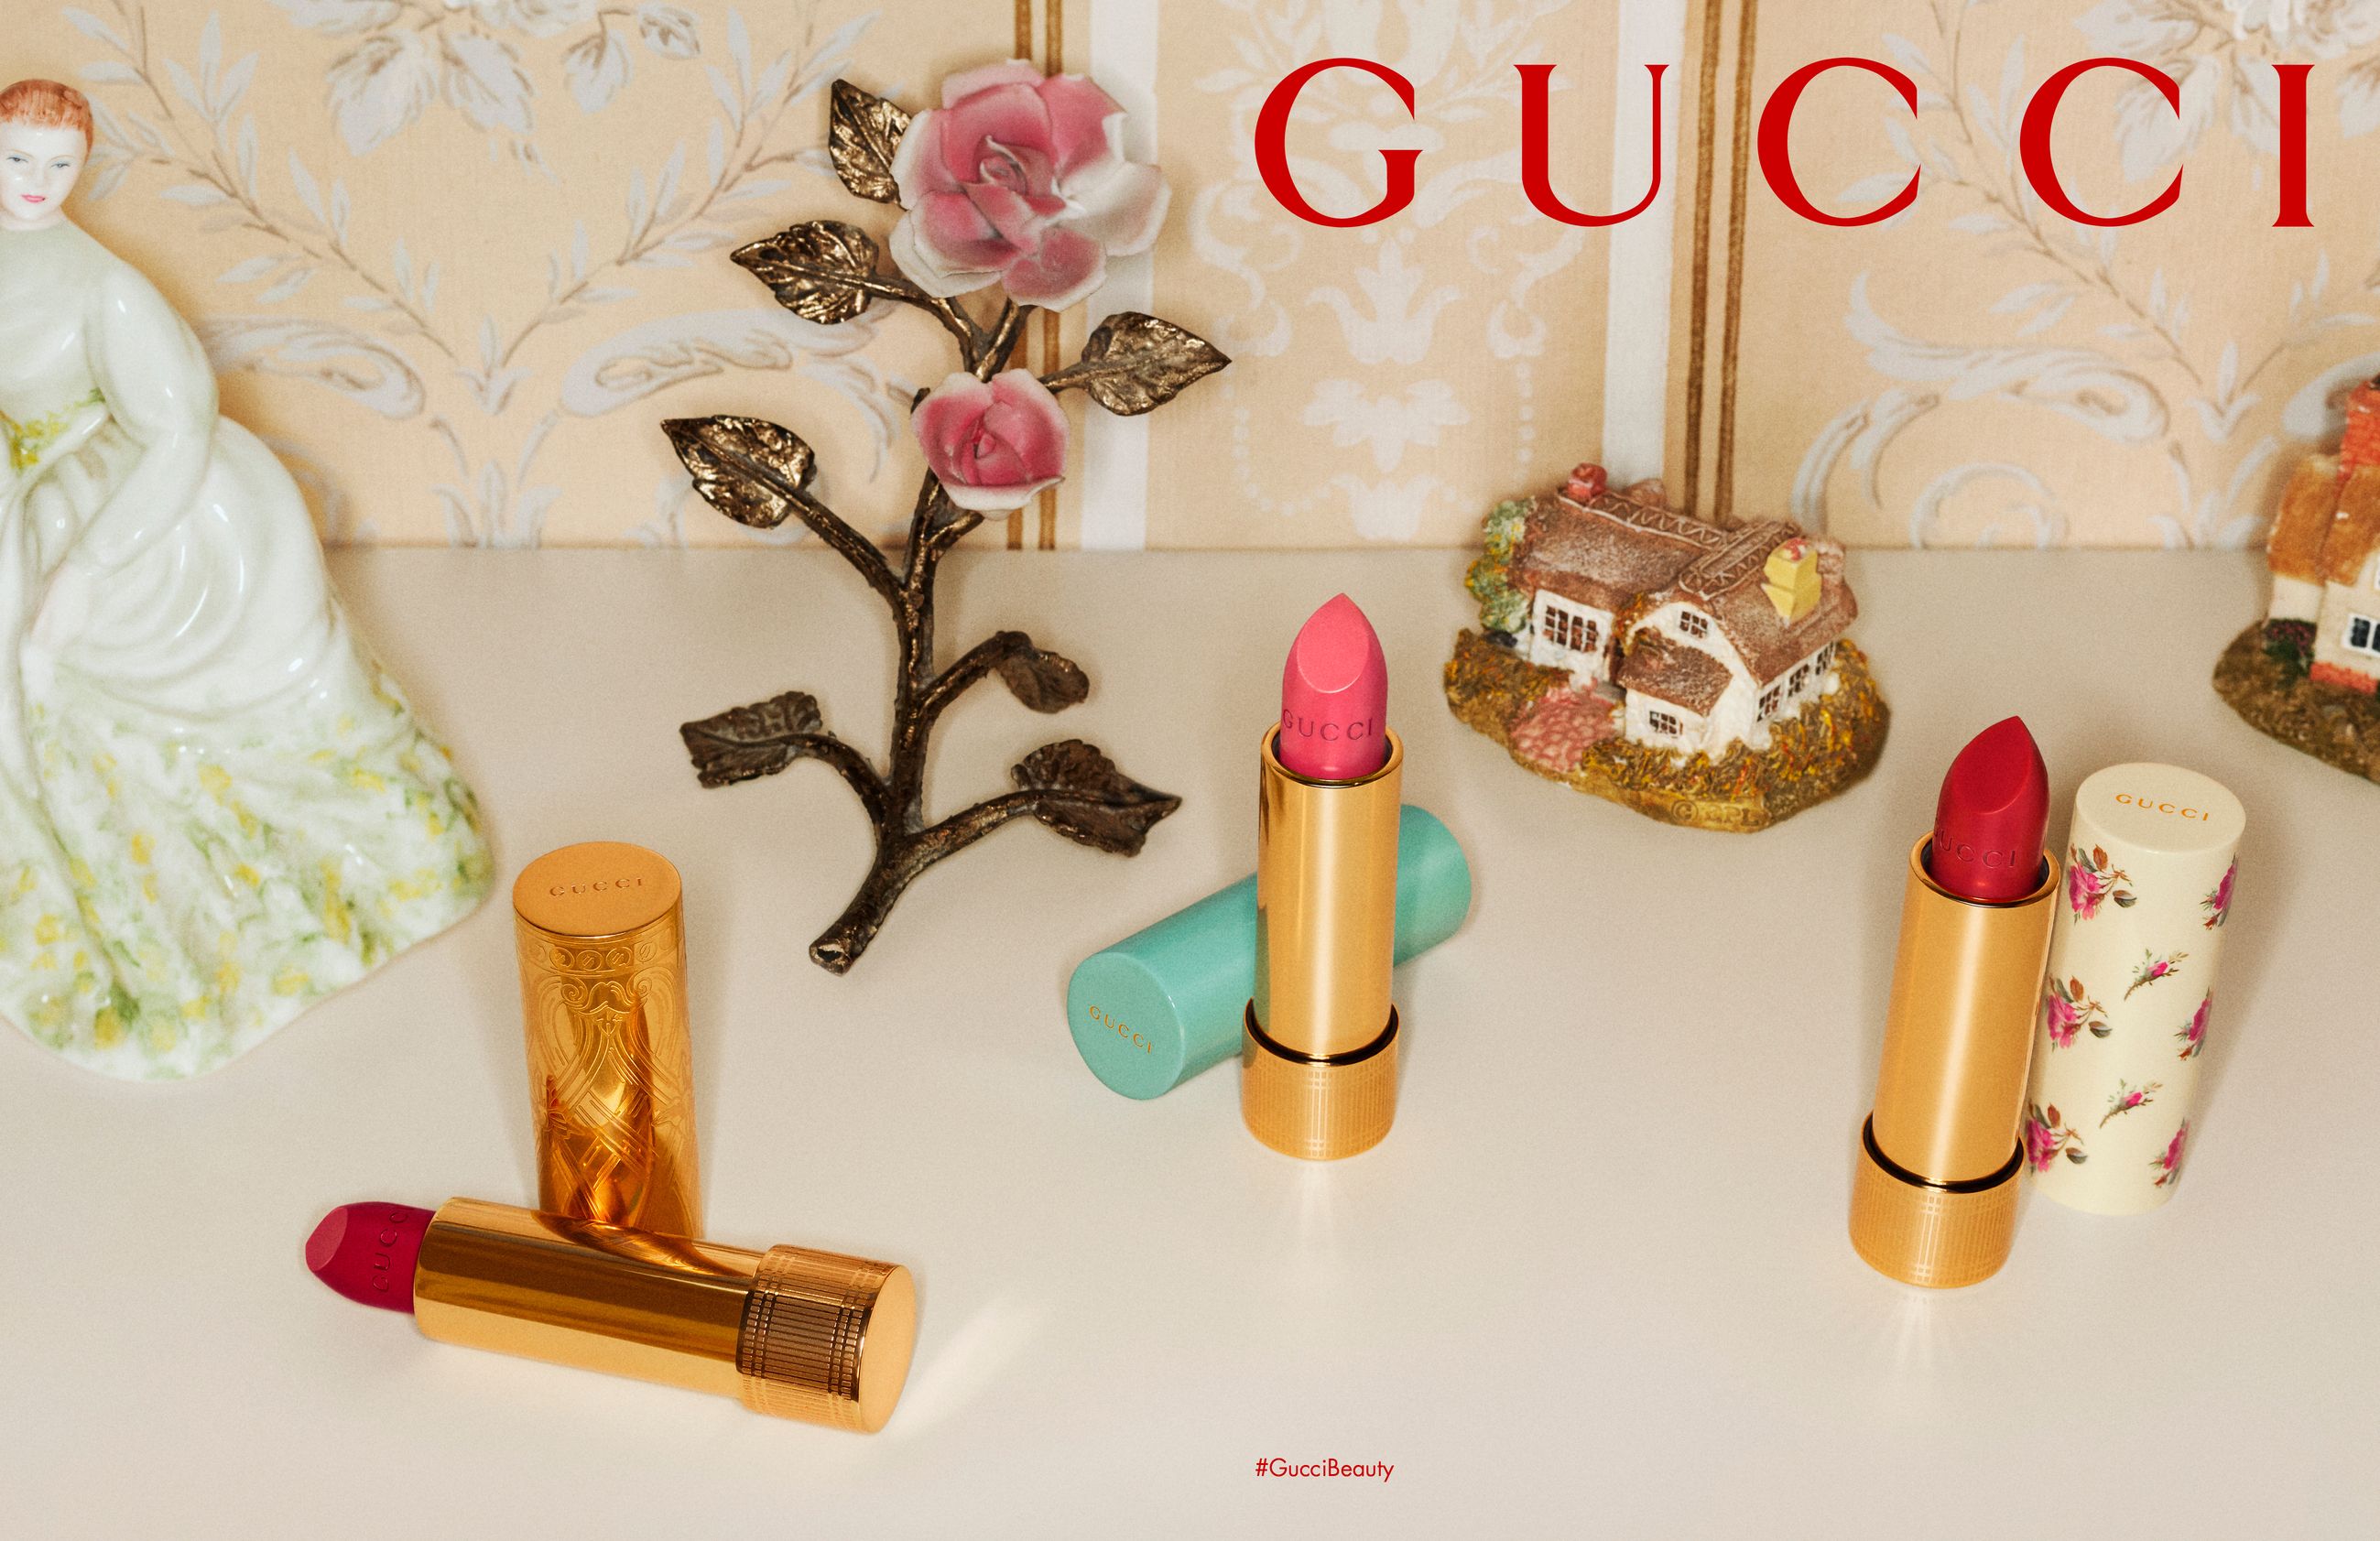 Doe herleven uitzending achterlijk persoon Gucci Makeup Marks Its Return With 58 New Lipsticks